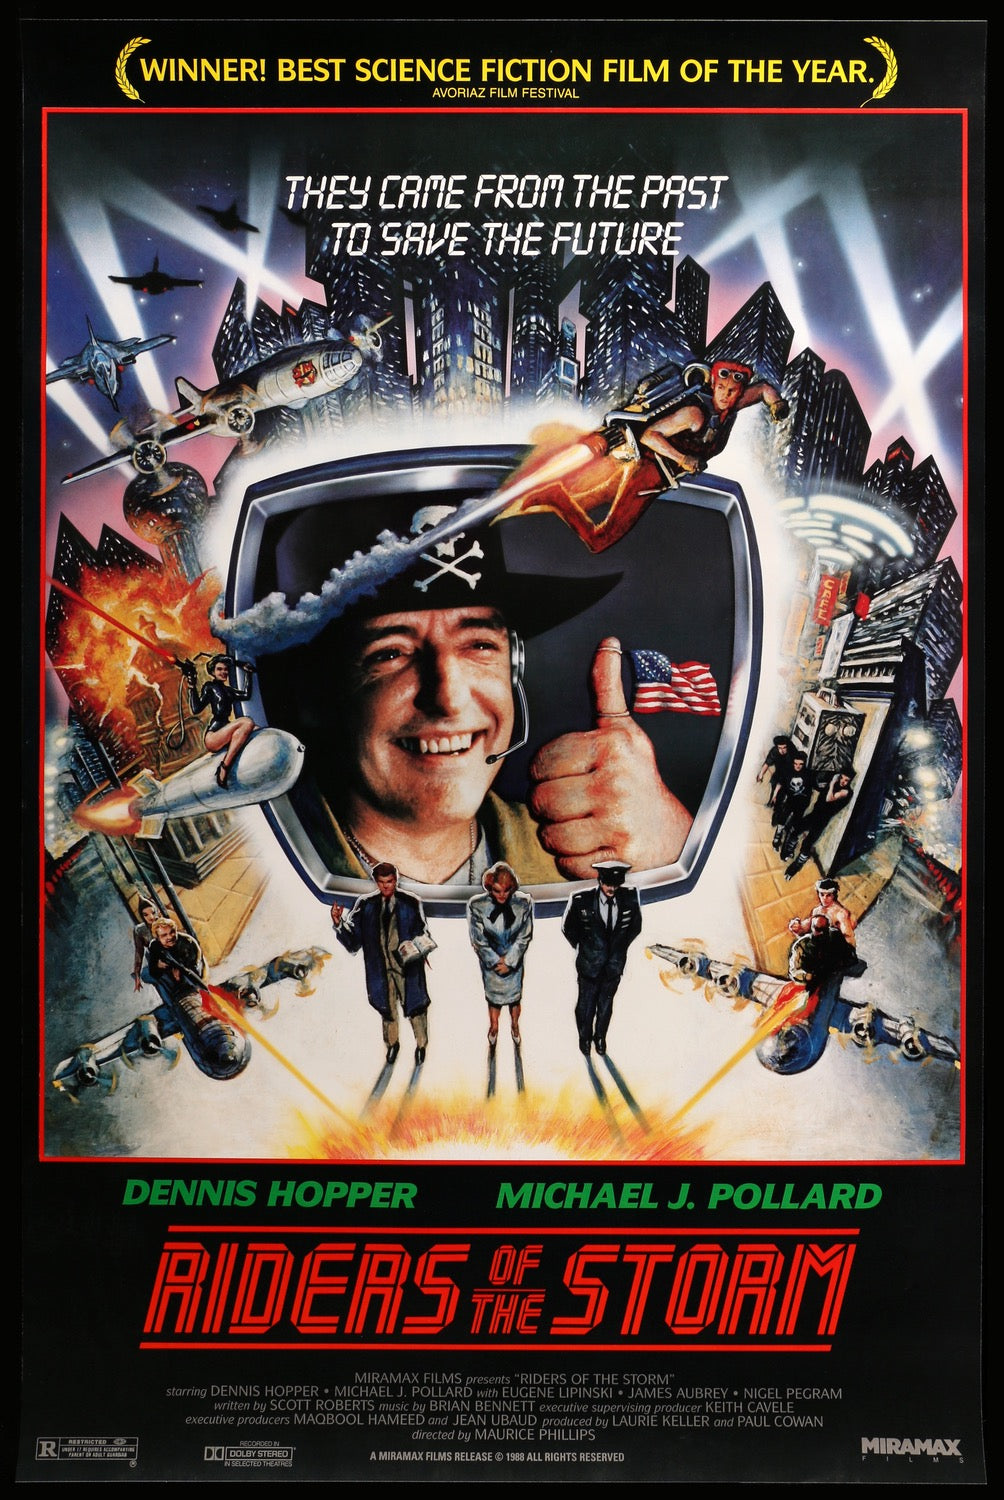 American Way (1986) original movie poster for sale at Original Film Art